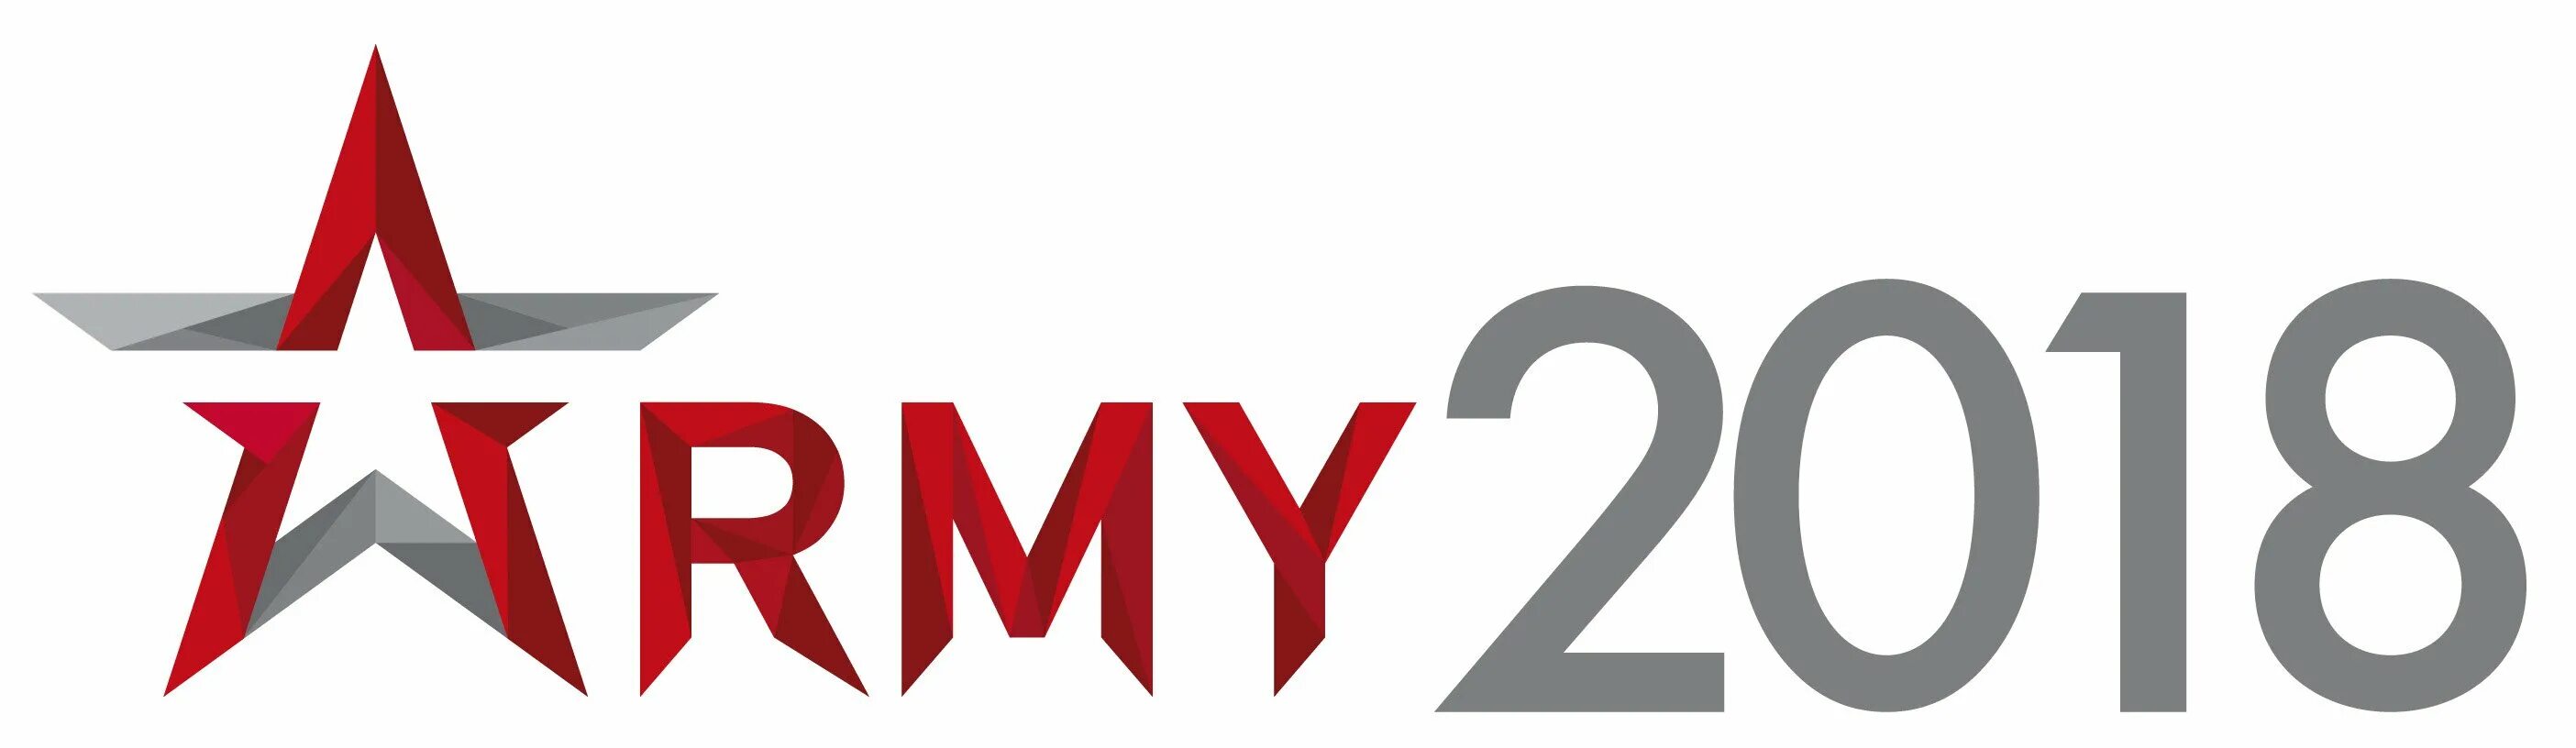 6 14 2023. Международный технический форум армия логотип. Армия 2021 логотип. Армия выставка логотип. Армия 2021 выставка логотип.